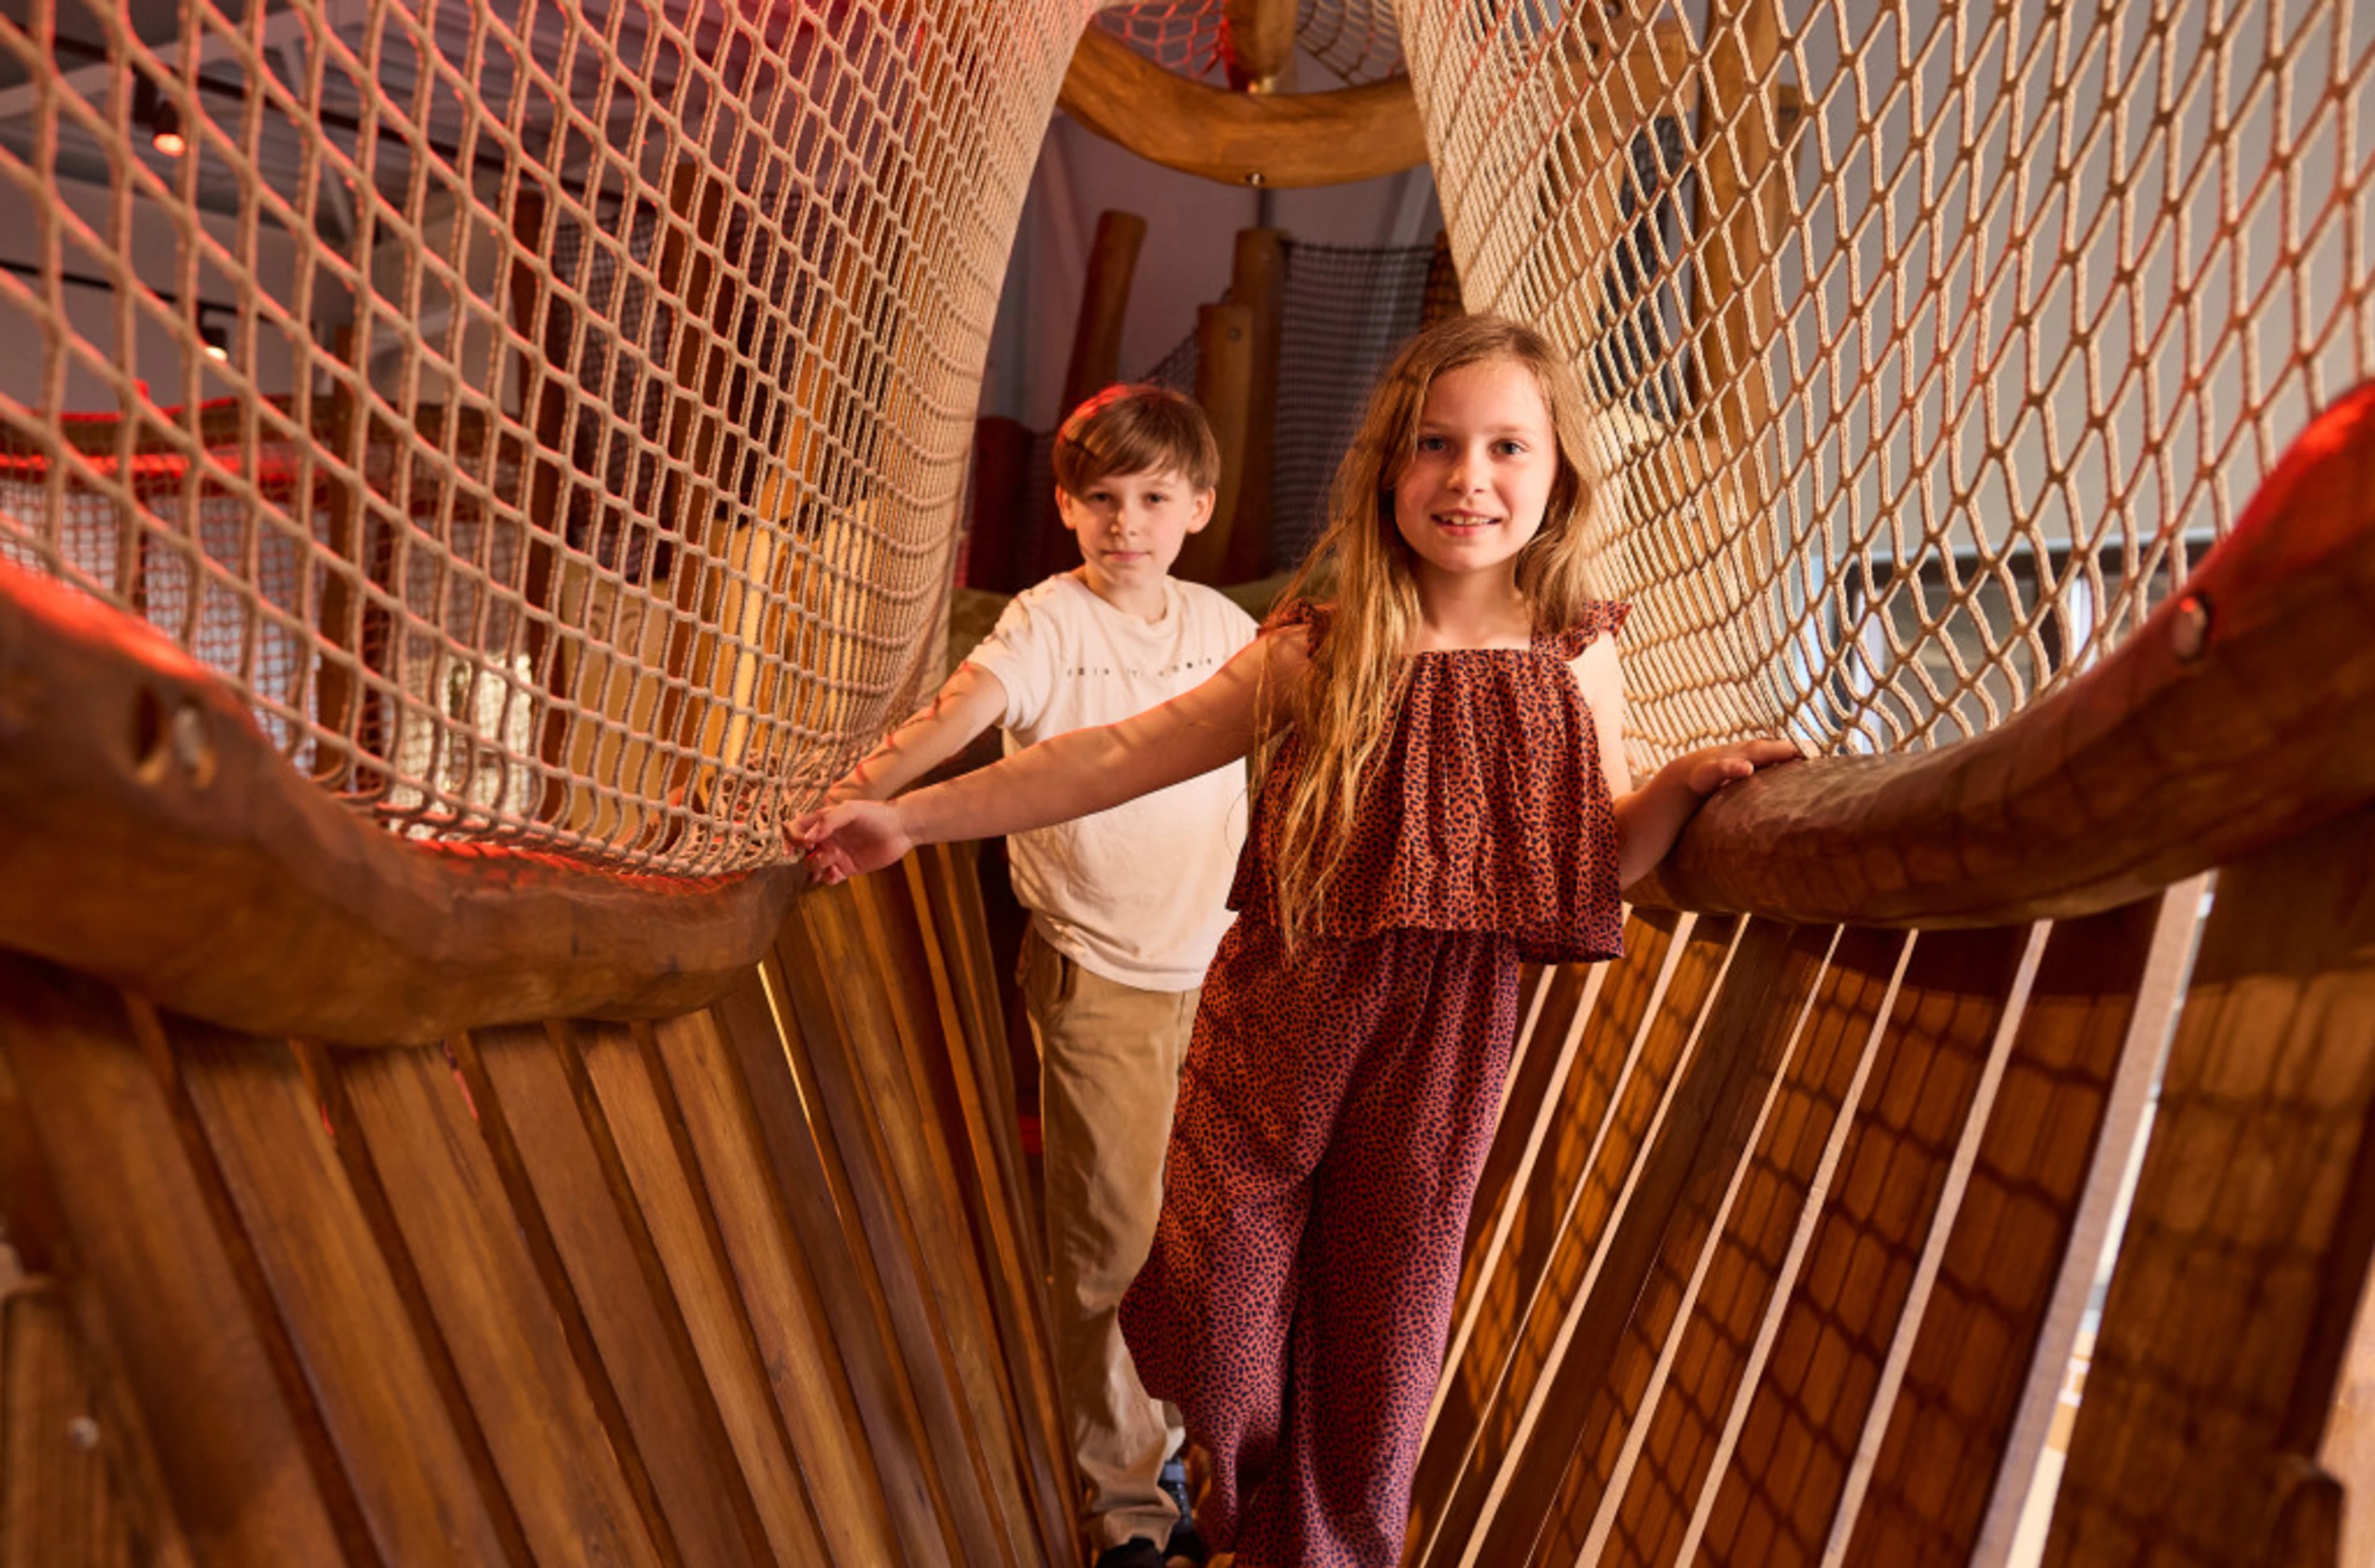 Safari resort beekse bergen ranger basecamp kinderen speeltuin indoor brug